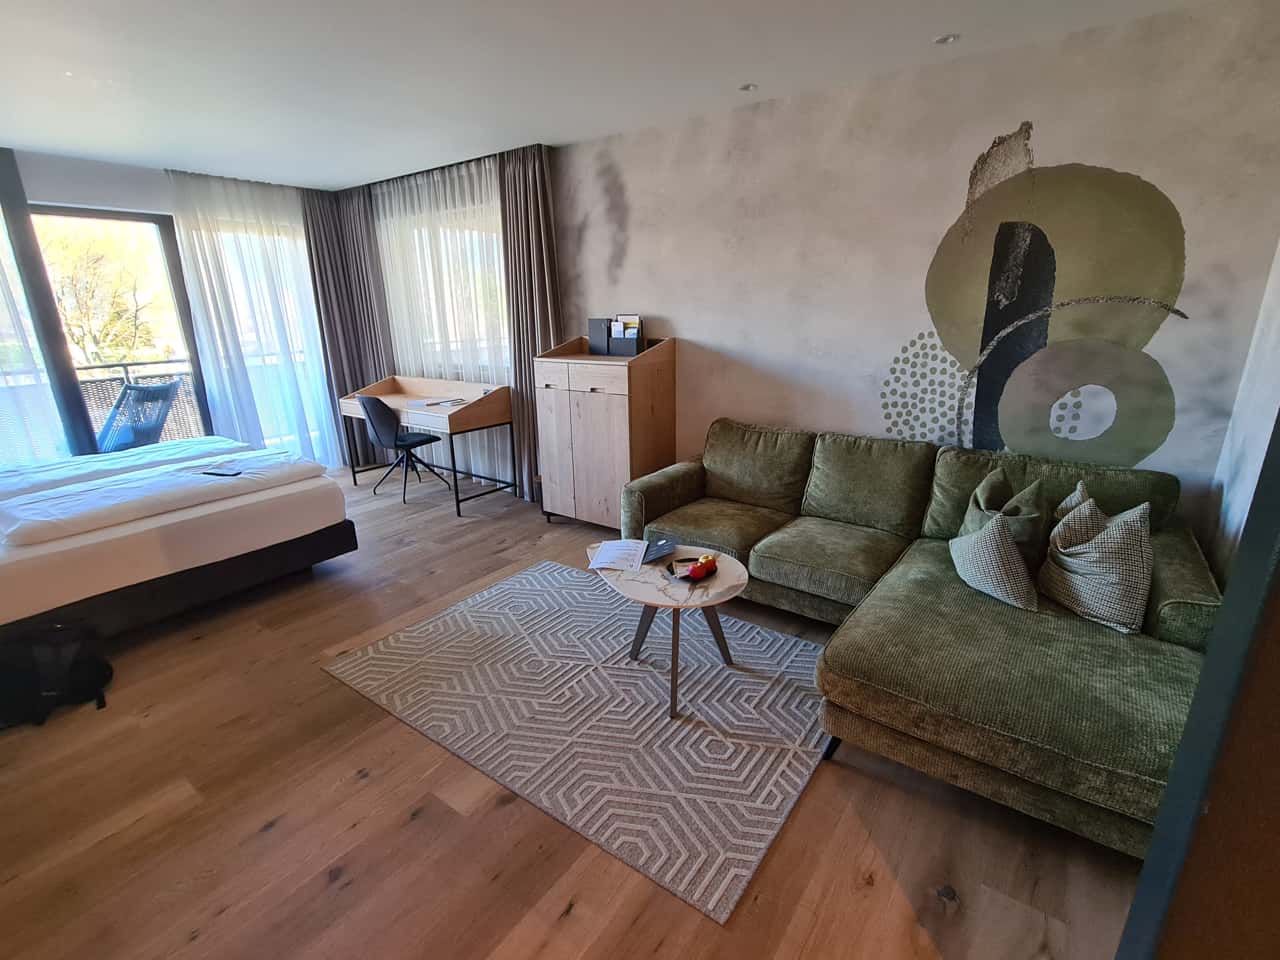 Zimmer im Hotel "Feldhof" in Naturns im Vinschgau